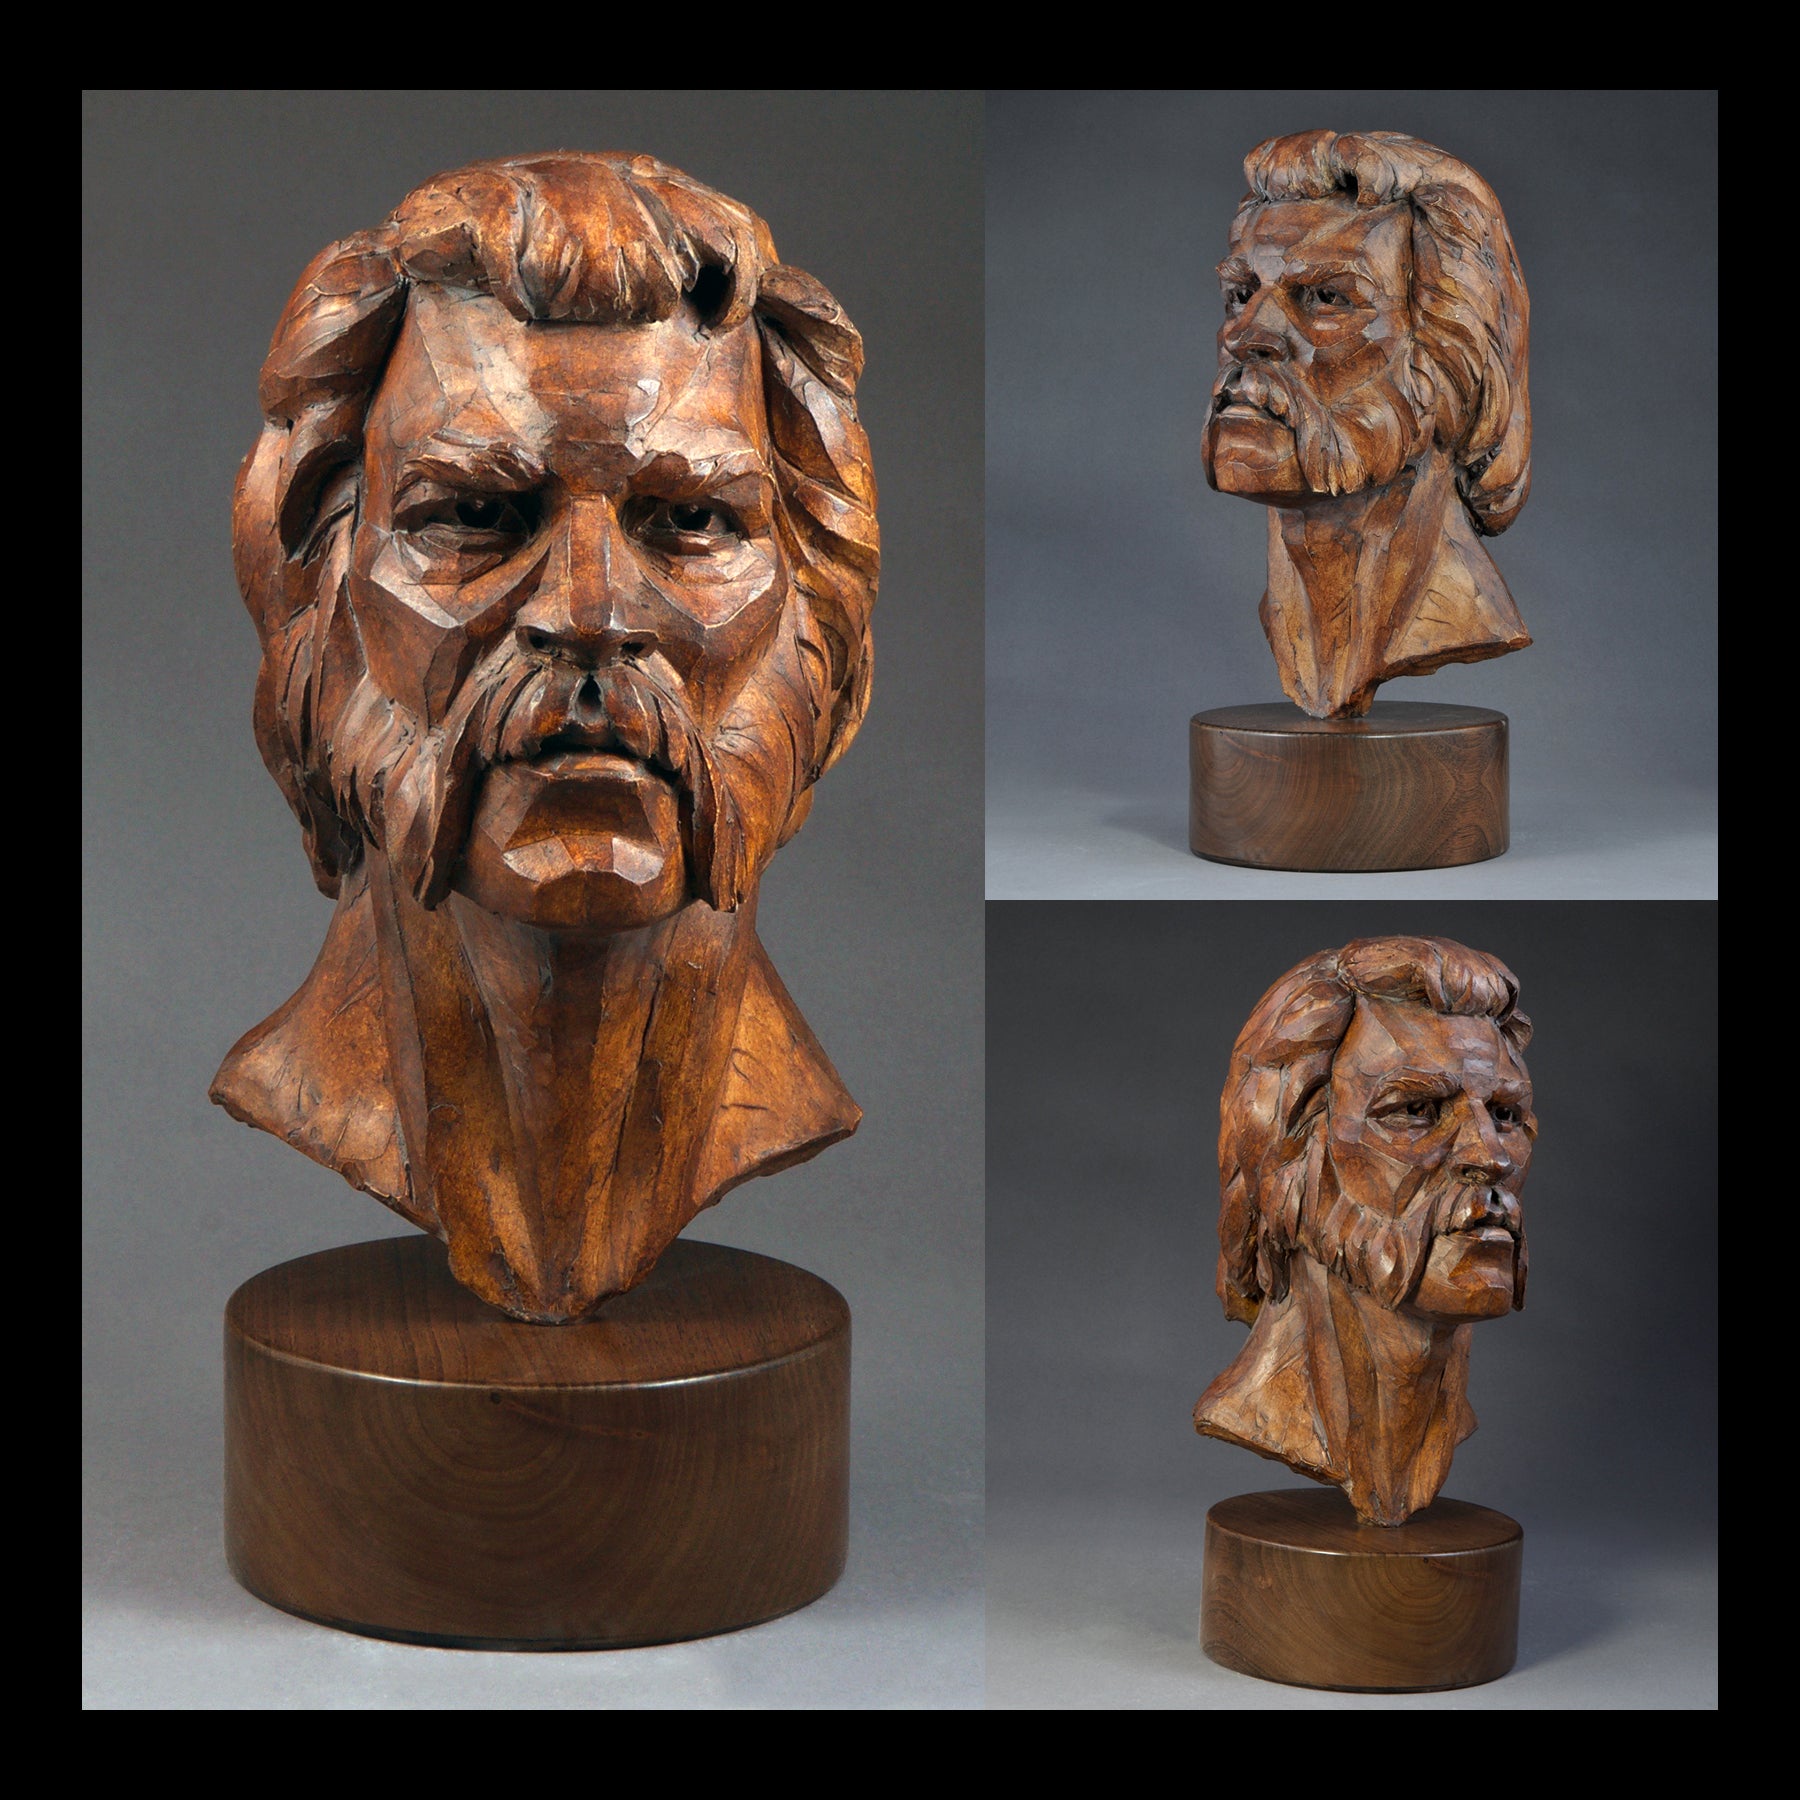 Faraut Online Sculpture Auction